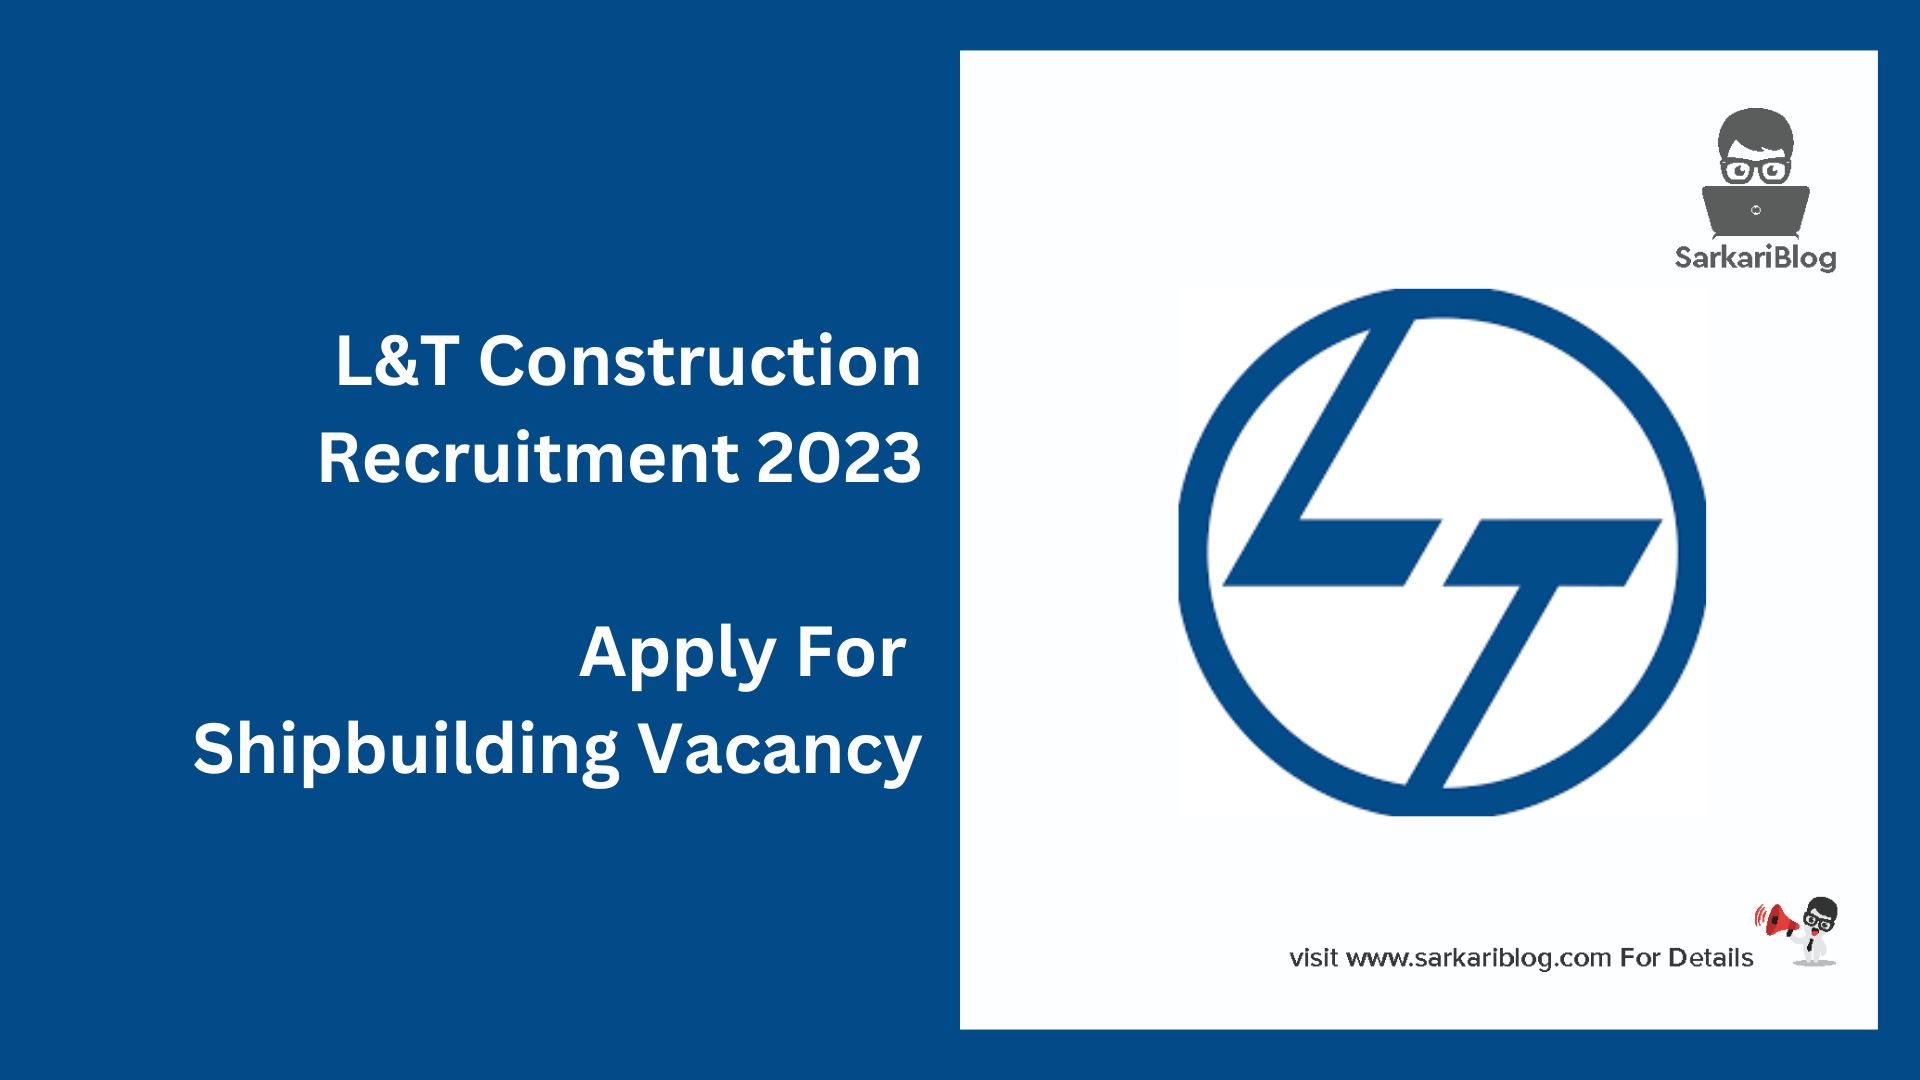 L&T Construction Recruitment 2023